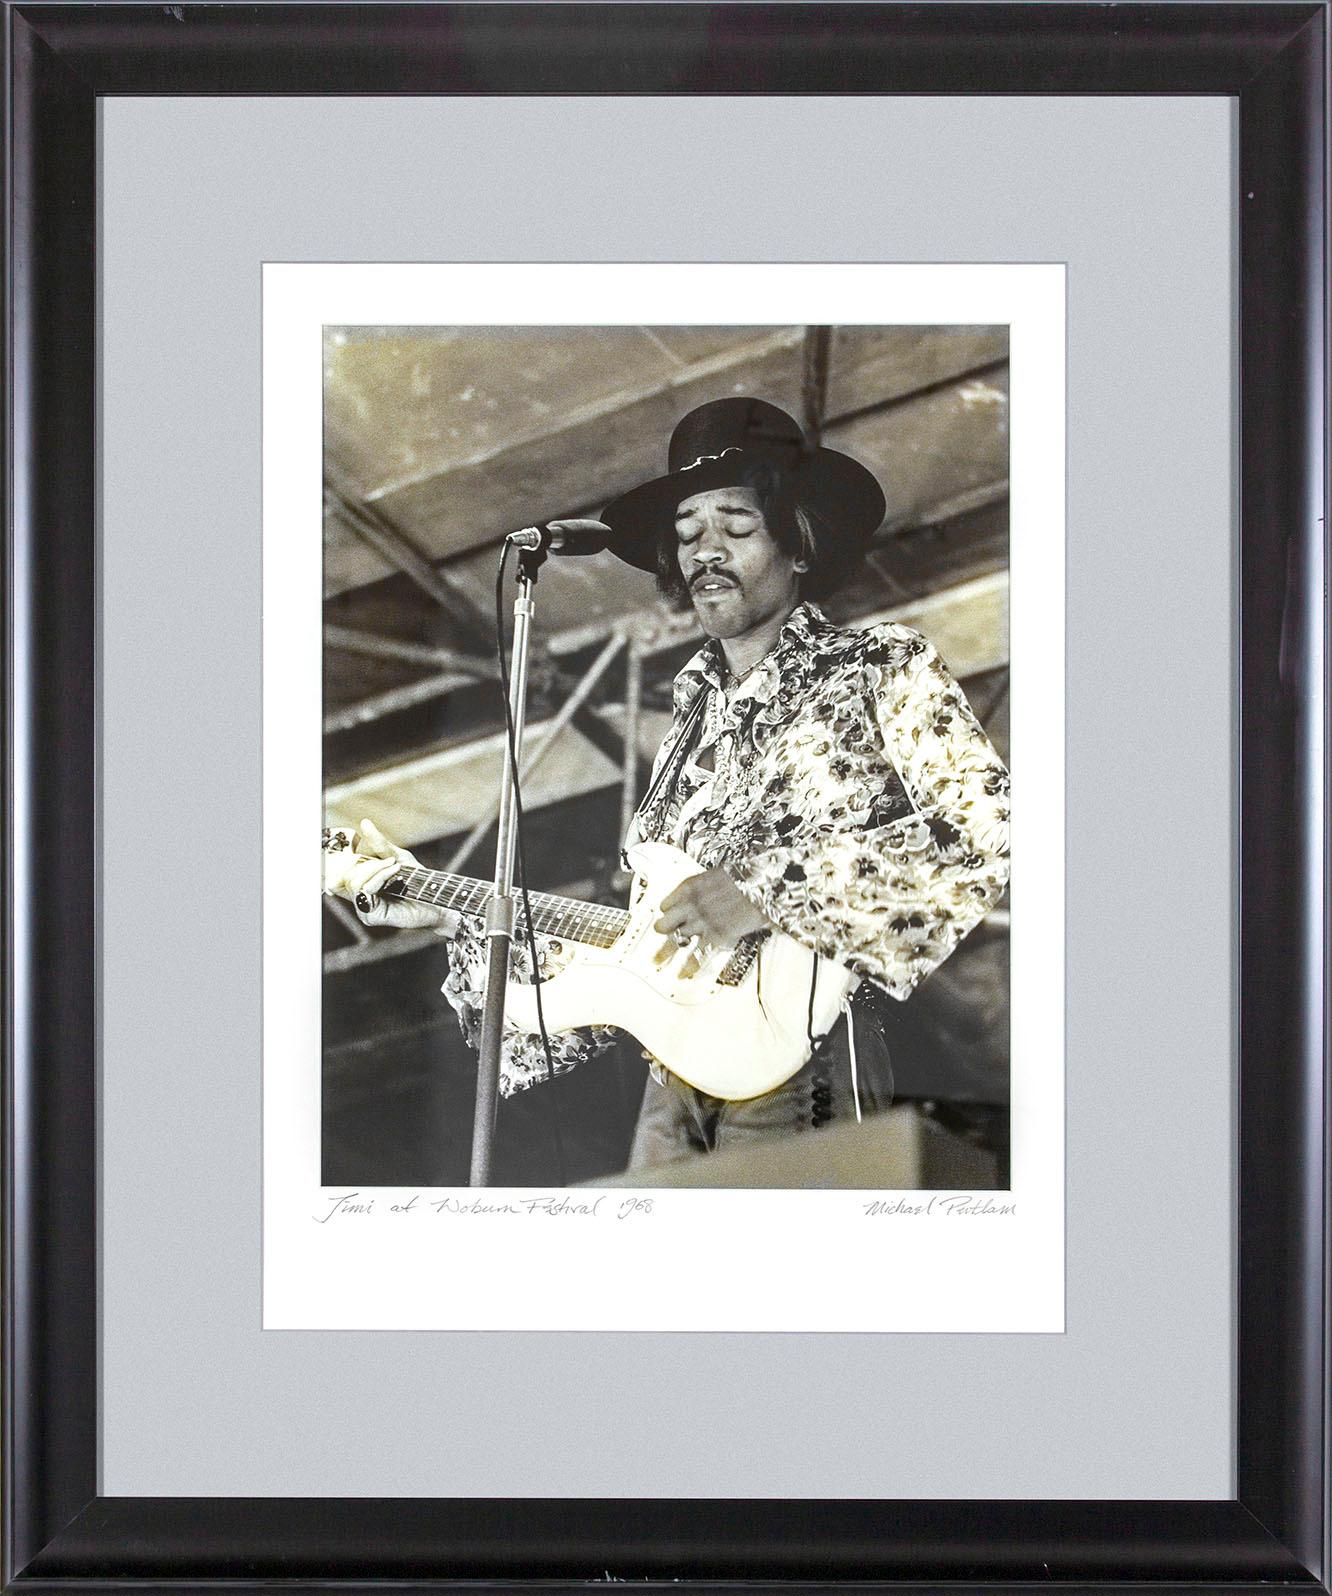 "Jimi at Woburn Festival 1968" gerahmte Schwarz-Weiß-Fotografie von Michael Putland von Jimi Hendrix auf dem Woburn Music Festival in England am 6. Juli 1968.  "Jim at Woburn Festival 1968" handschriftlich auf der Vorderseite in der unteren linken